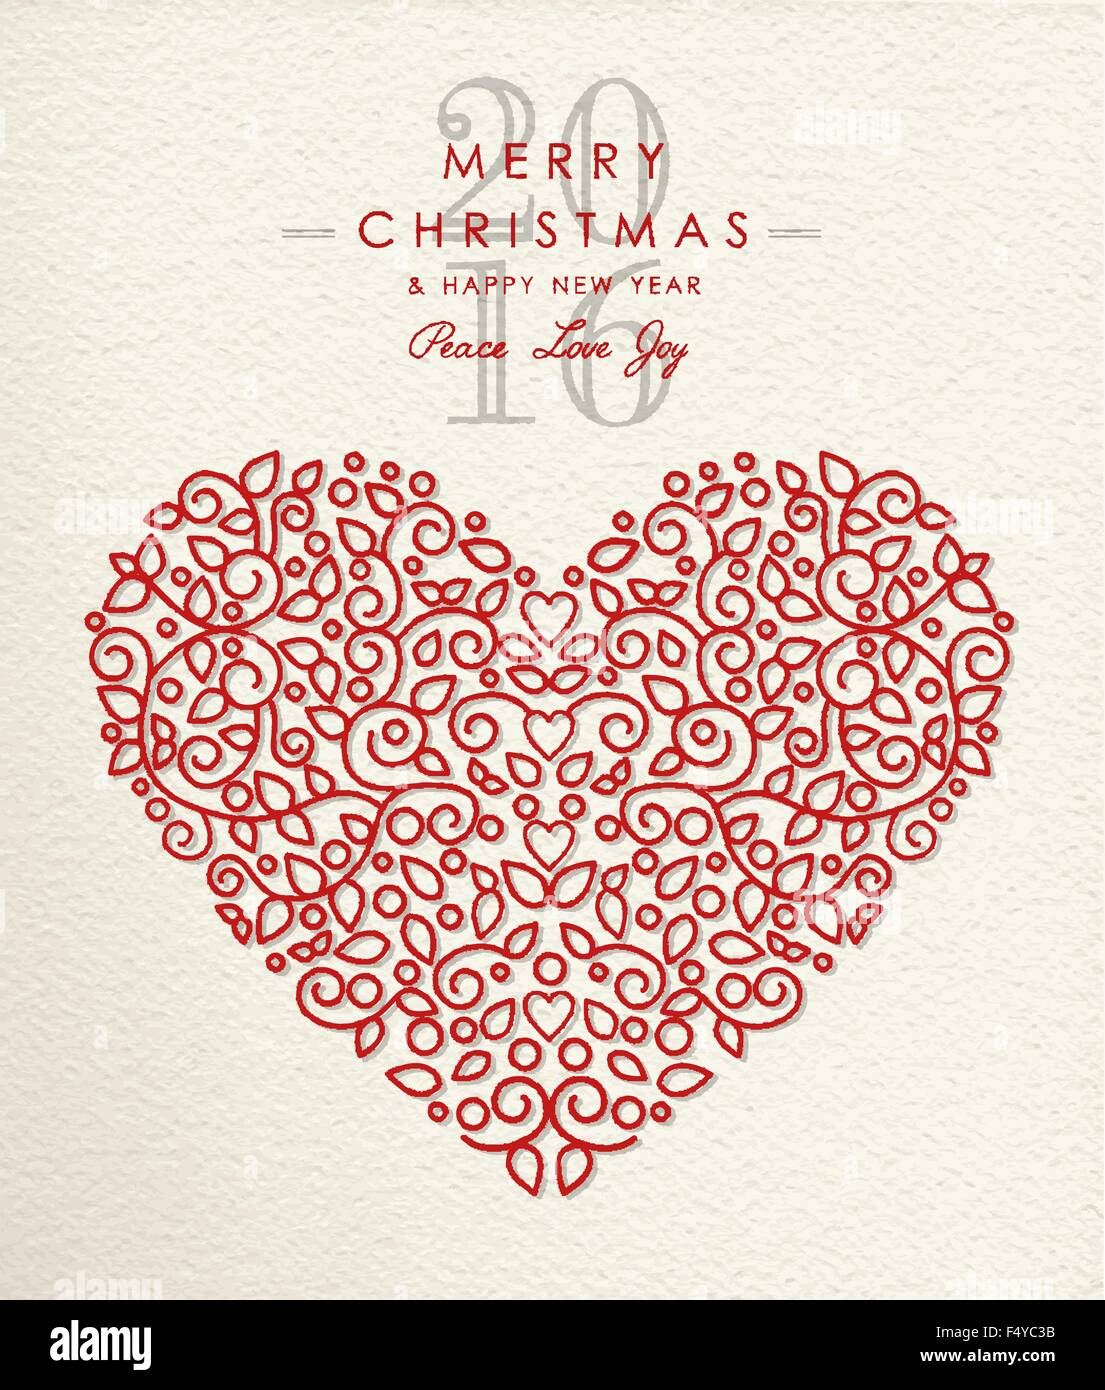 Feliz Navidad Feliz año nuevo 2016 ornamento en forma de corazón, el amor de vacaciones estilo de esquema de diseño. Ideal para tarjetas de felicitación de Navidad. Ilustración del Vector